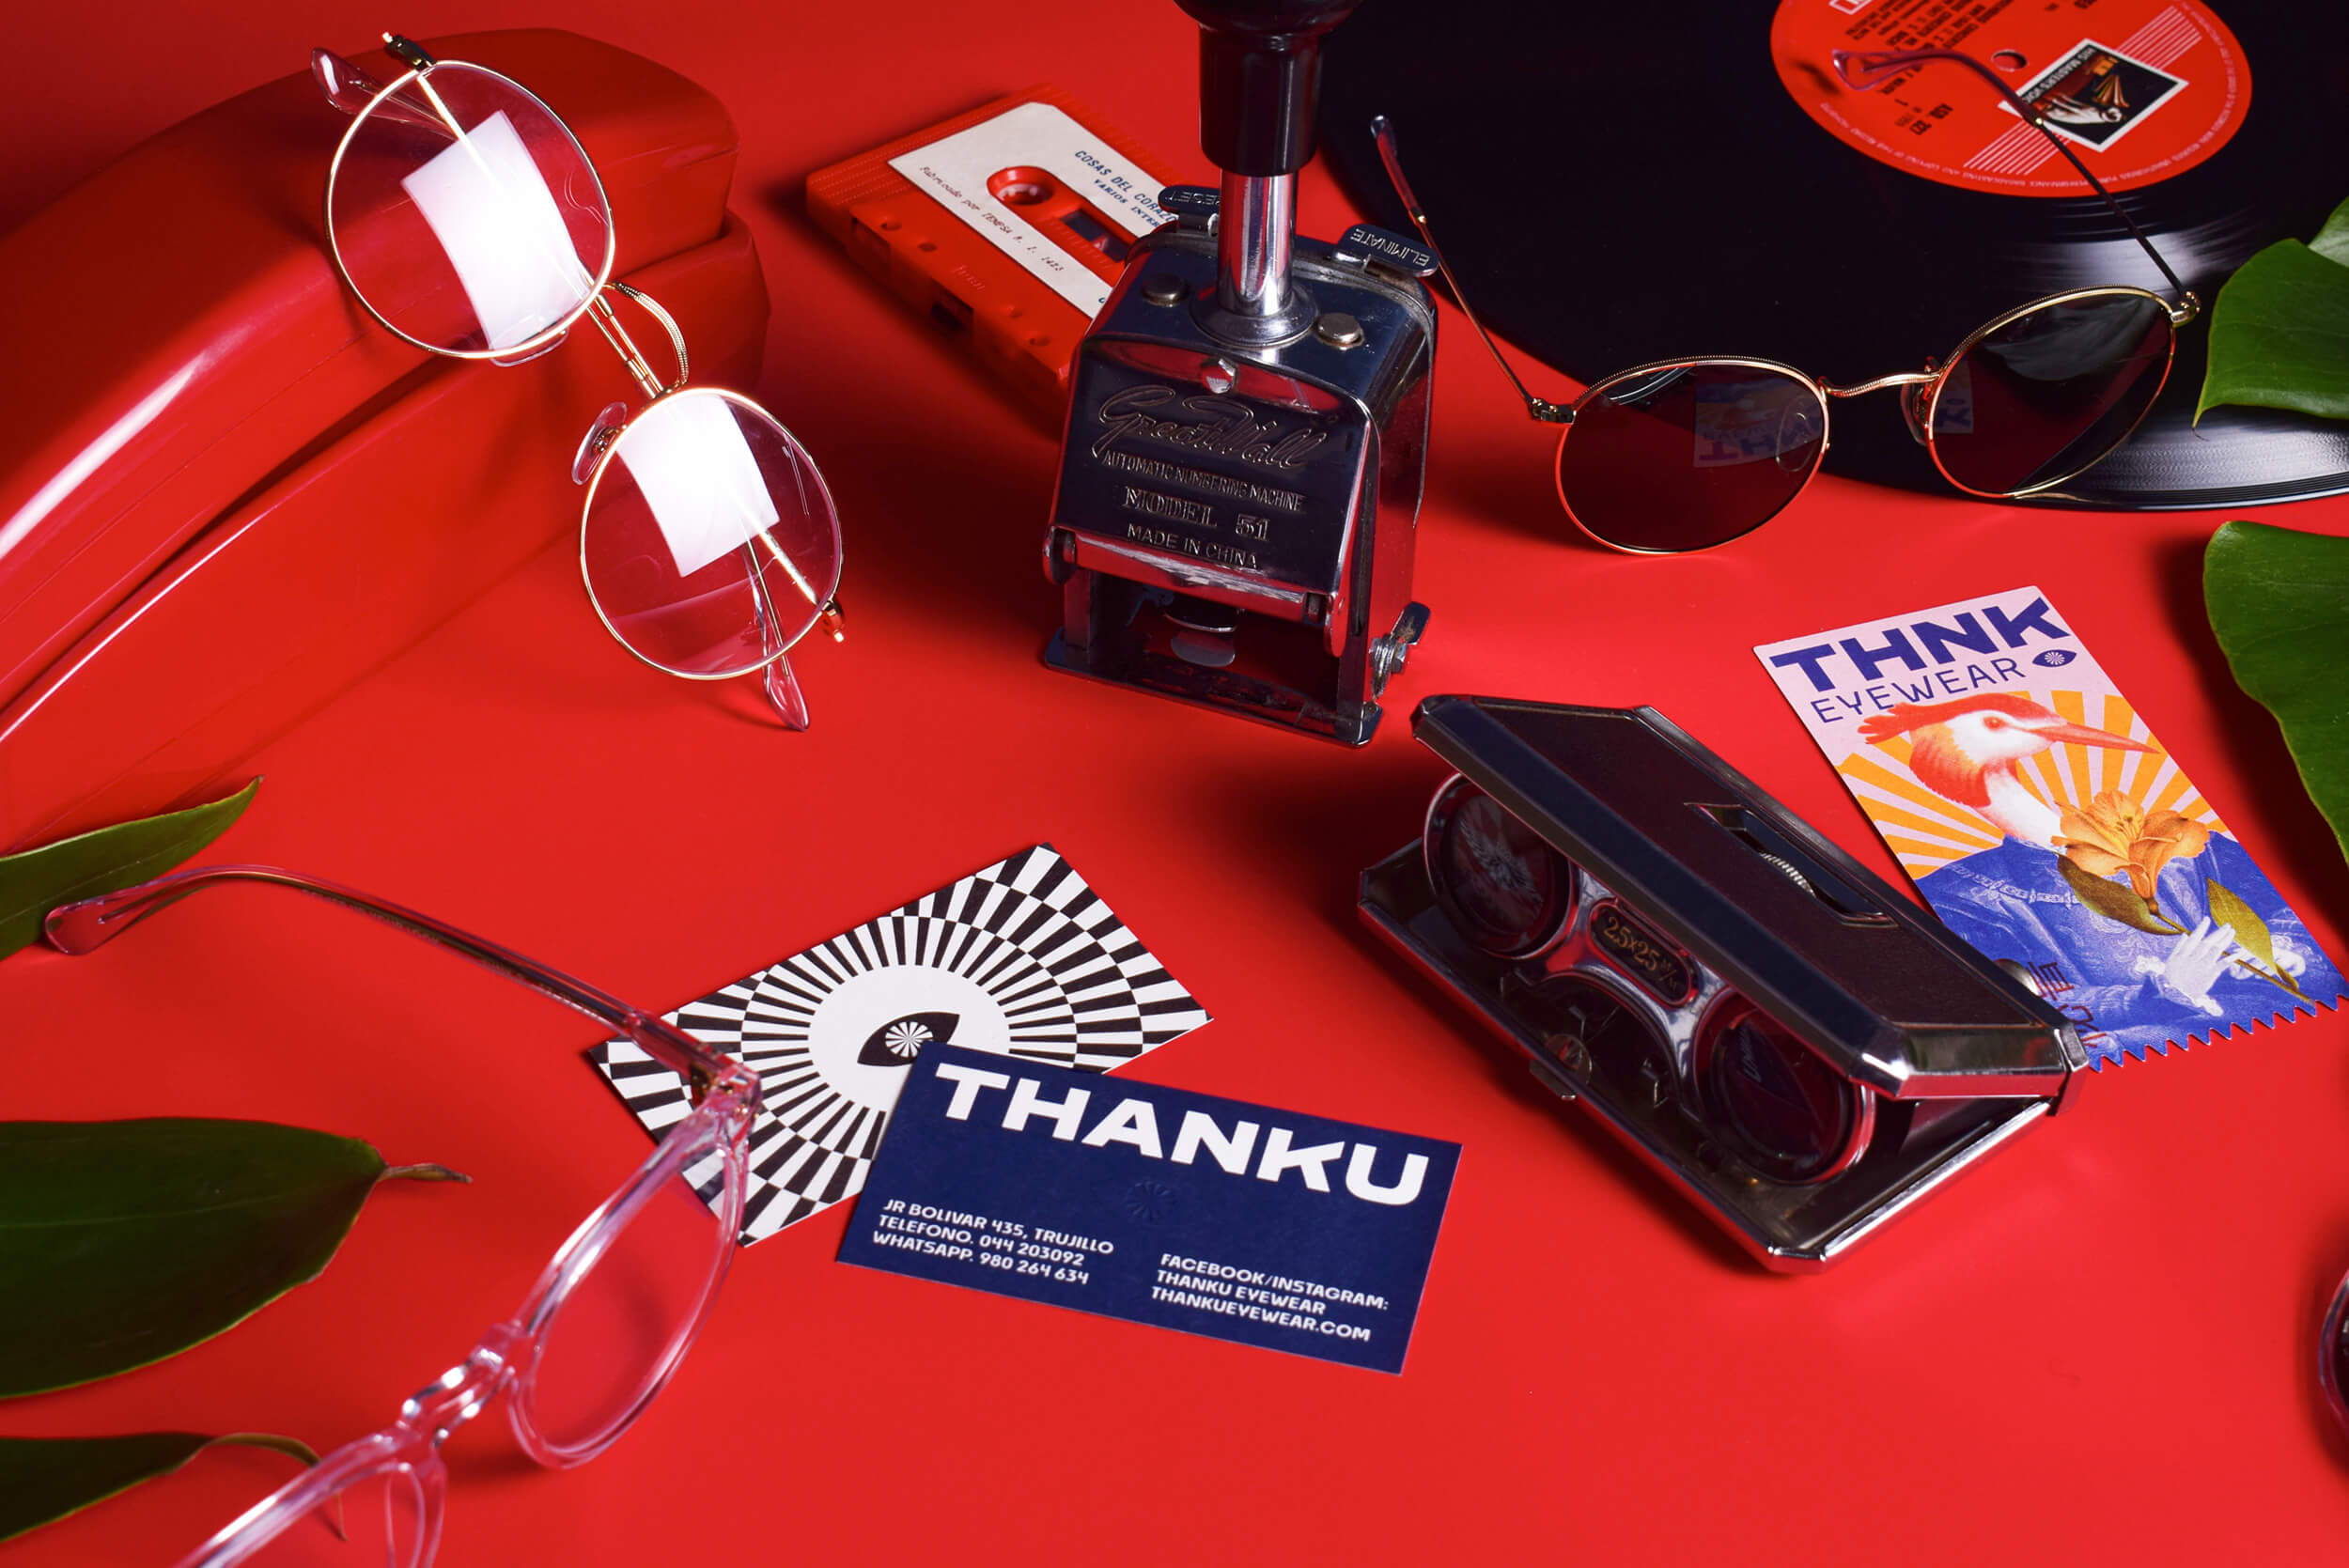 国外Thanku眼镜品牌视觉设计,眼镜产品精美的宣传设计作品。